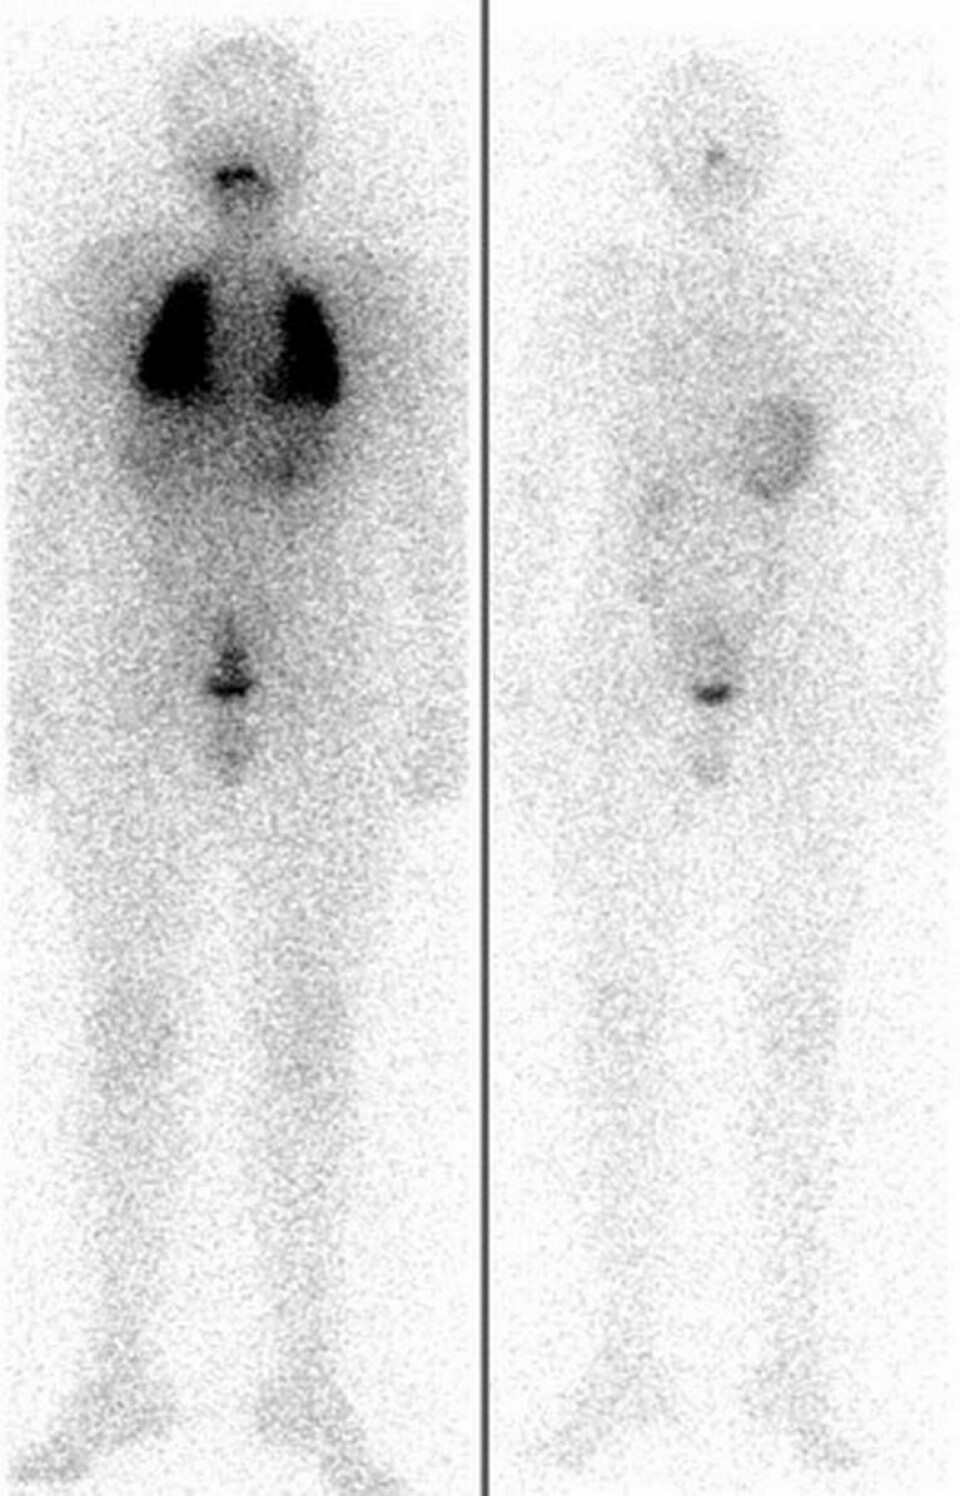 13 årig pojke med sköldkörtelcancer och metastaser i lungorna. Bild till vänster före terapin. Efter fyra radiojodbehandlingar var metastaserna borta. Foto: Universitetskliniken i Würzburg